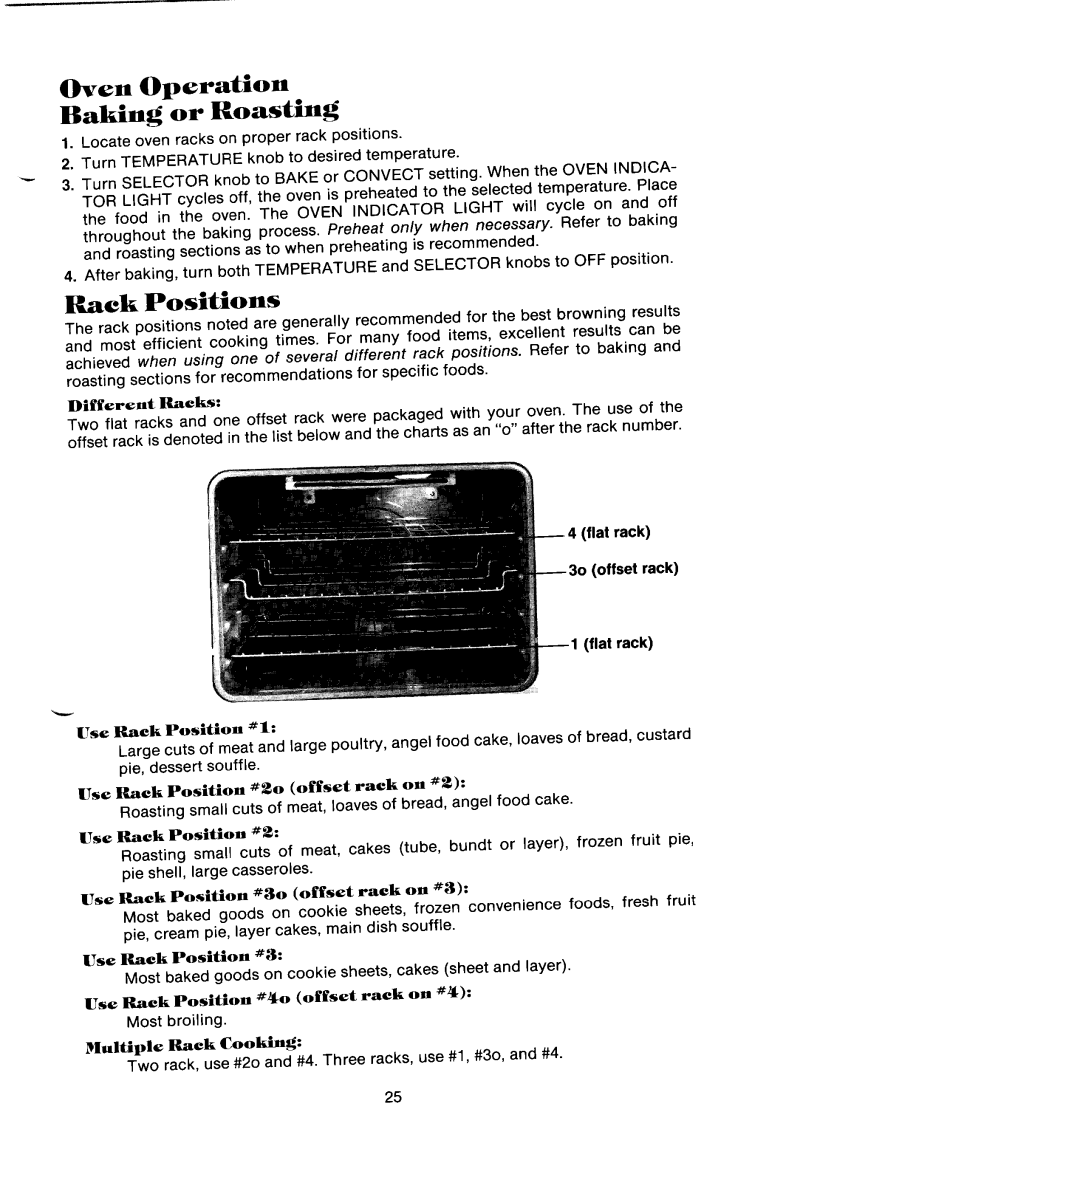 Jenn-Air SEG196 manual Oven Operation Baking or Roasting, Rack Positions, Different Racks, flat rack offset rack flat rack 